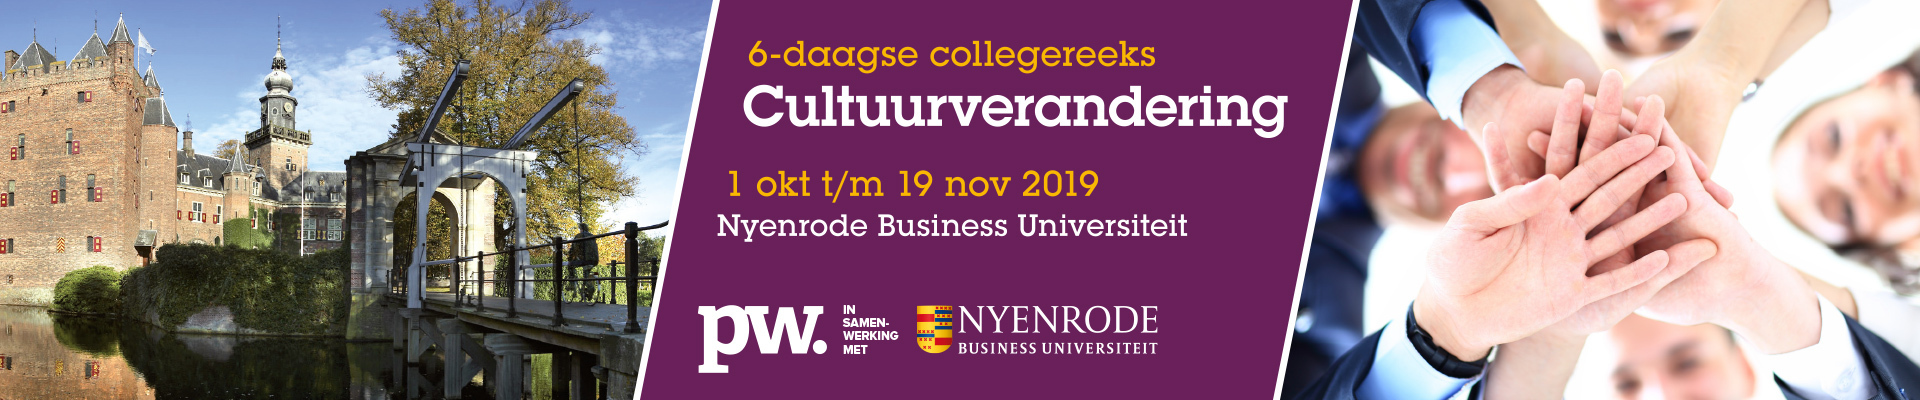 HR Cultuurverandering najaar (Nyenrode) 2019